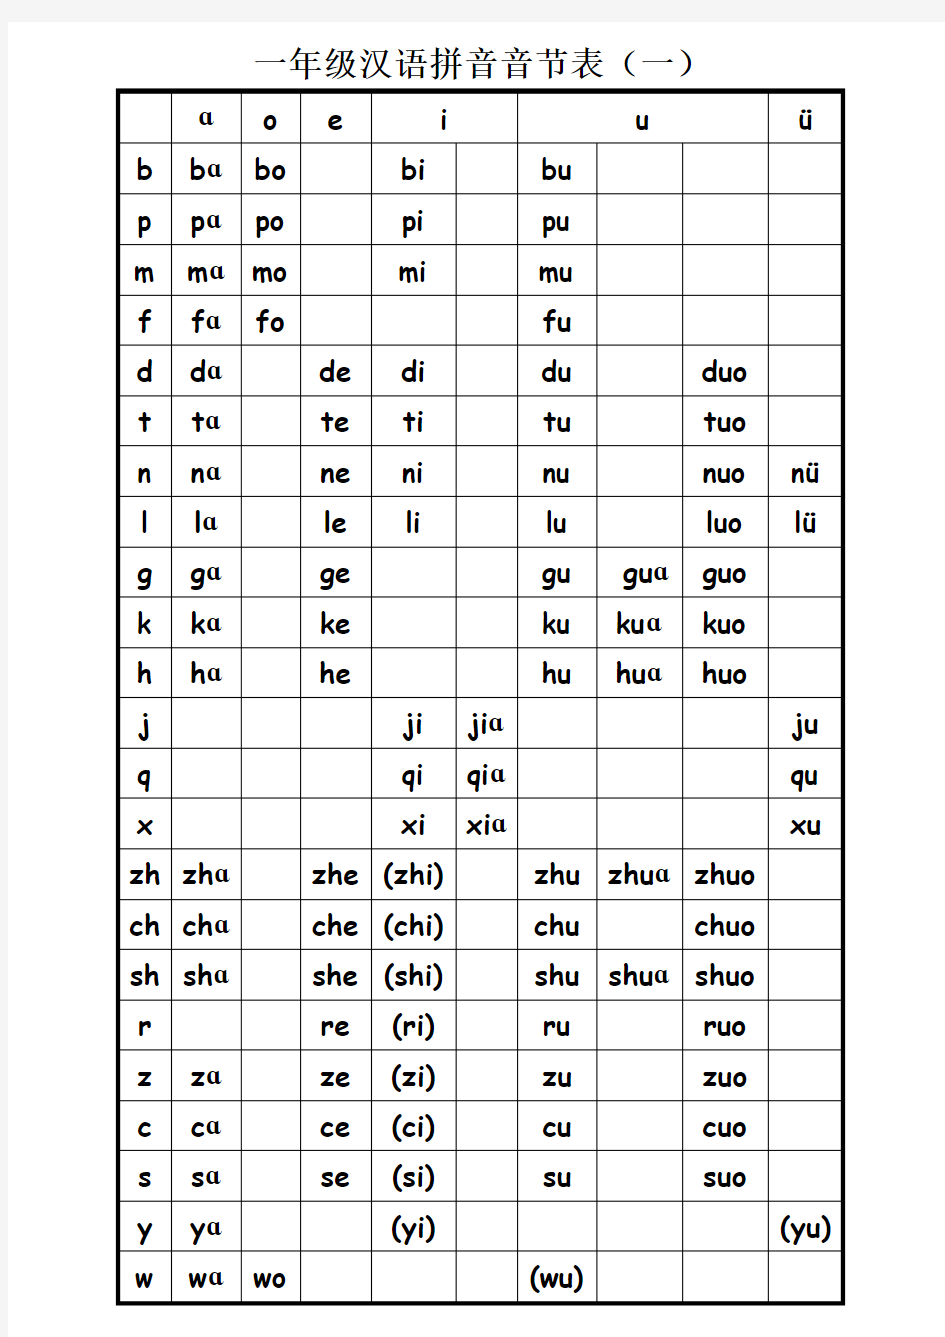 打印版 一年级汉语拼音音节表完全版